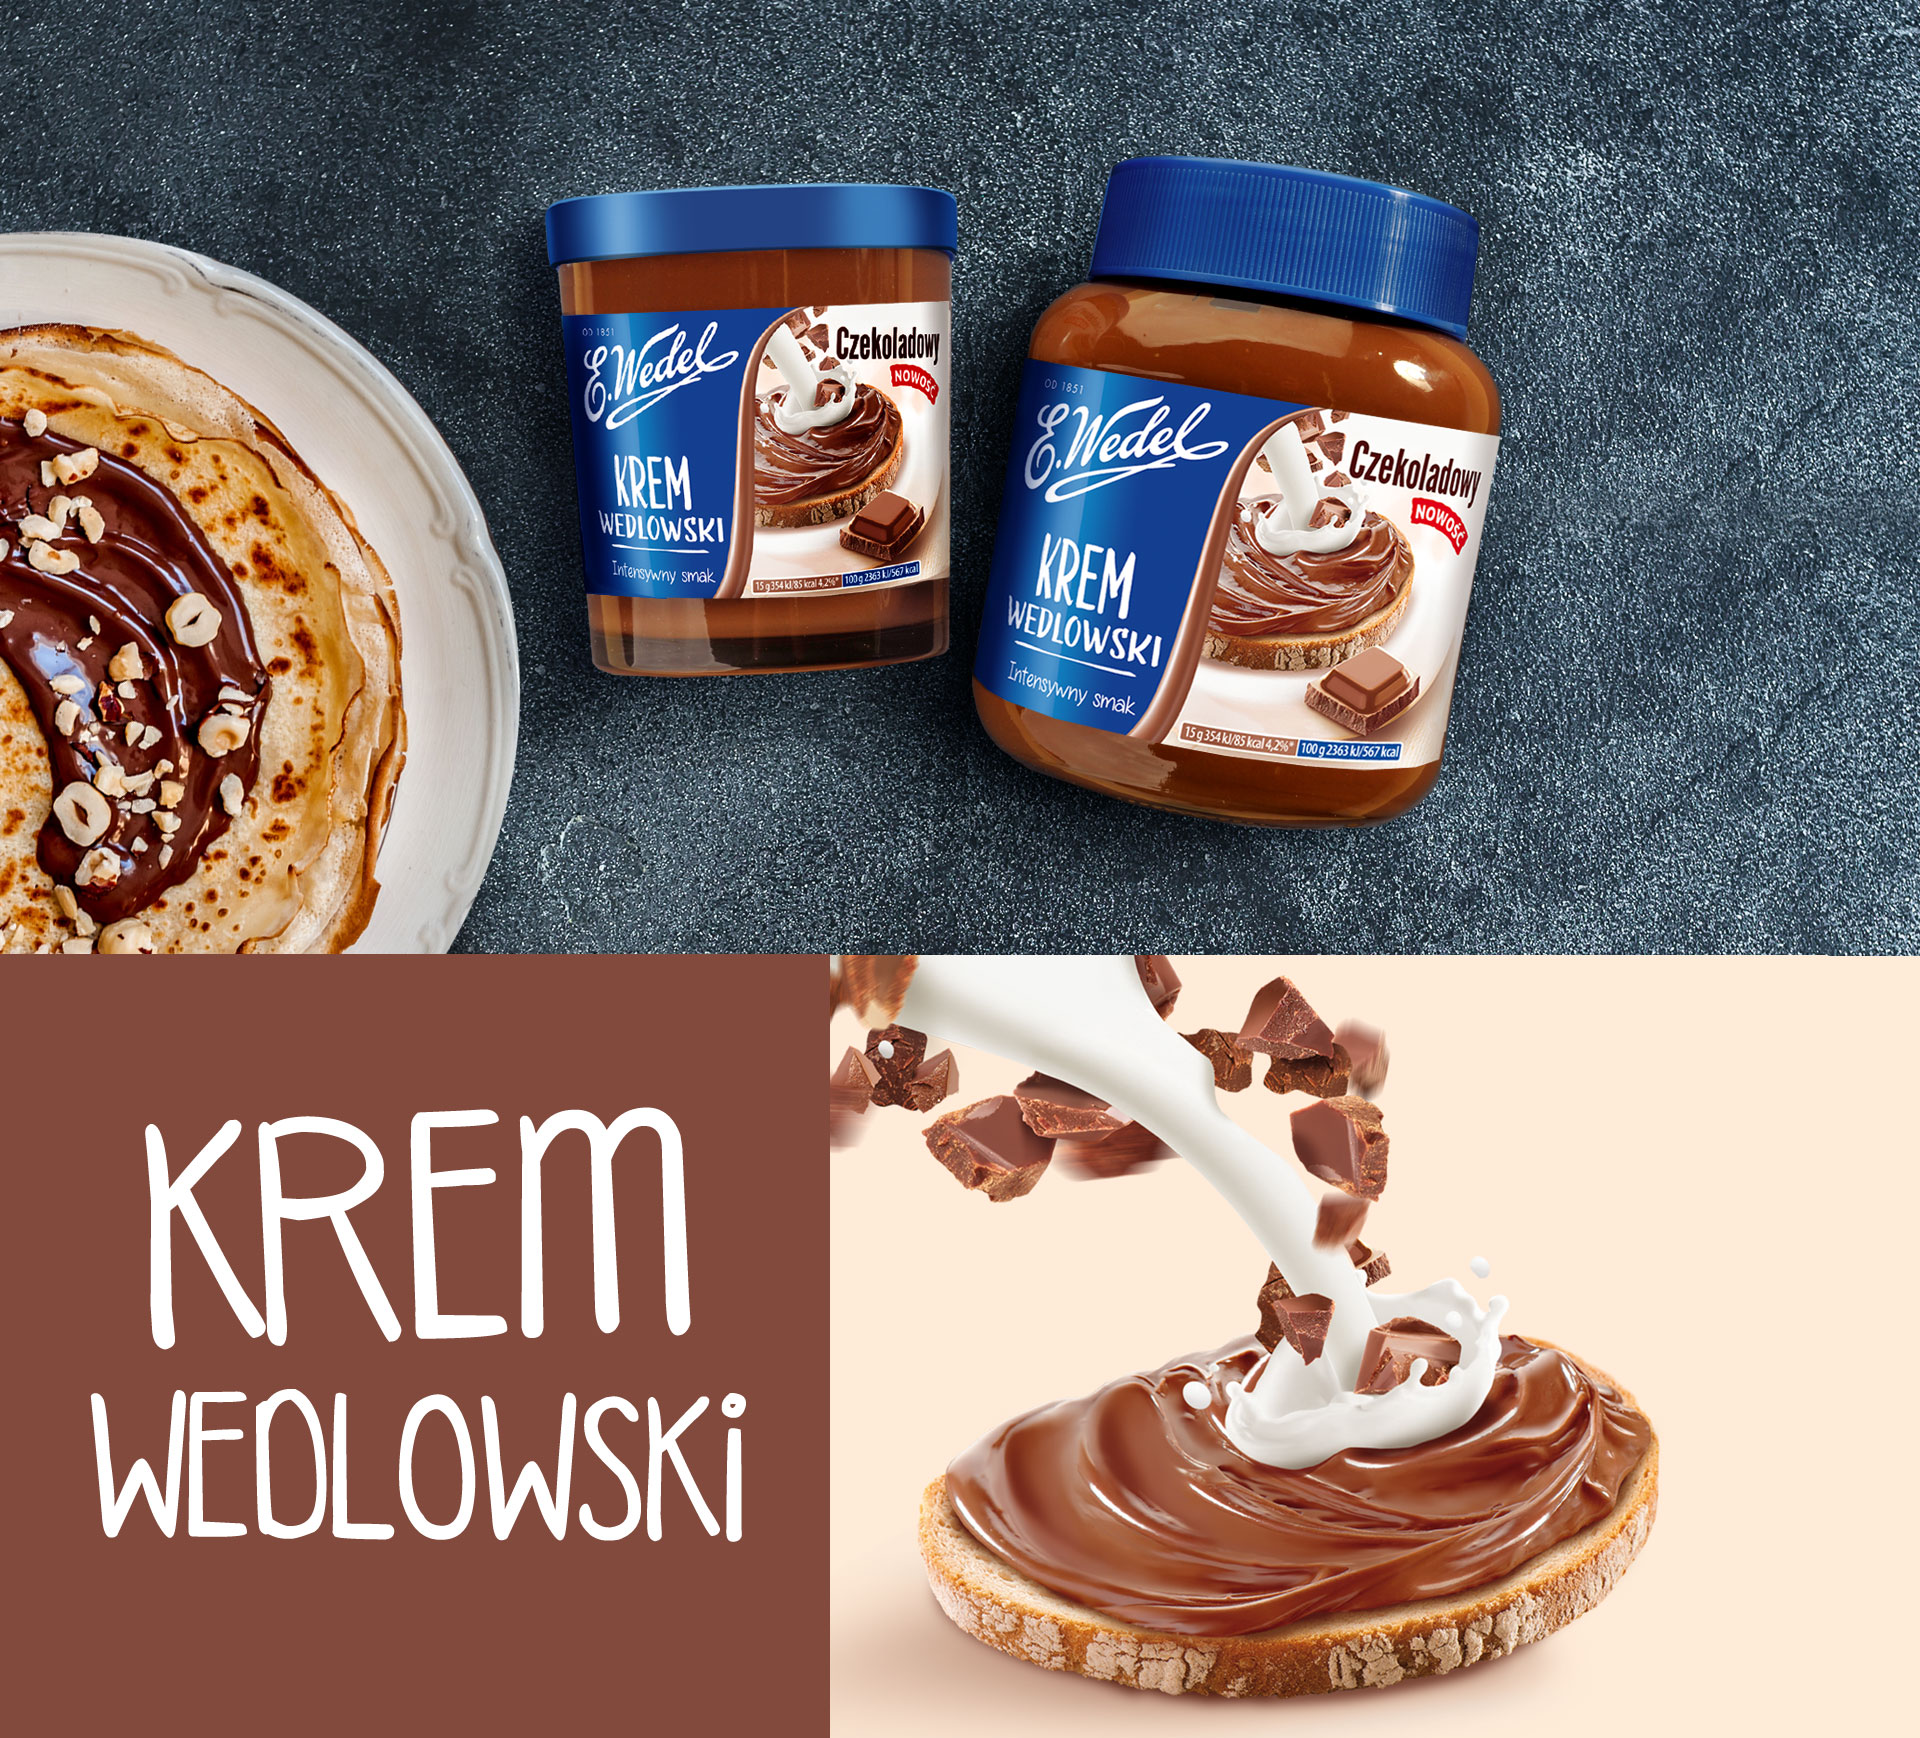 Design opakowań Krem Wedlowski i świat marki - kremowa czekoladowość na kanapce.